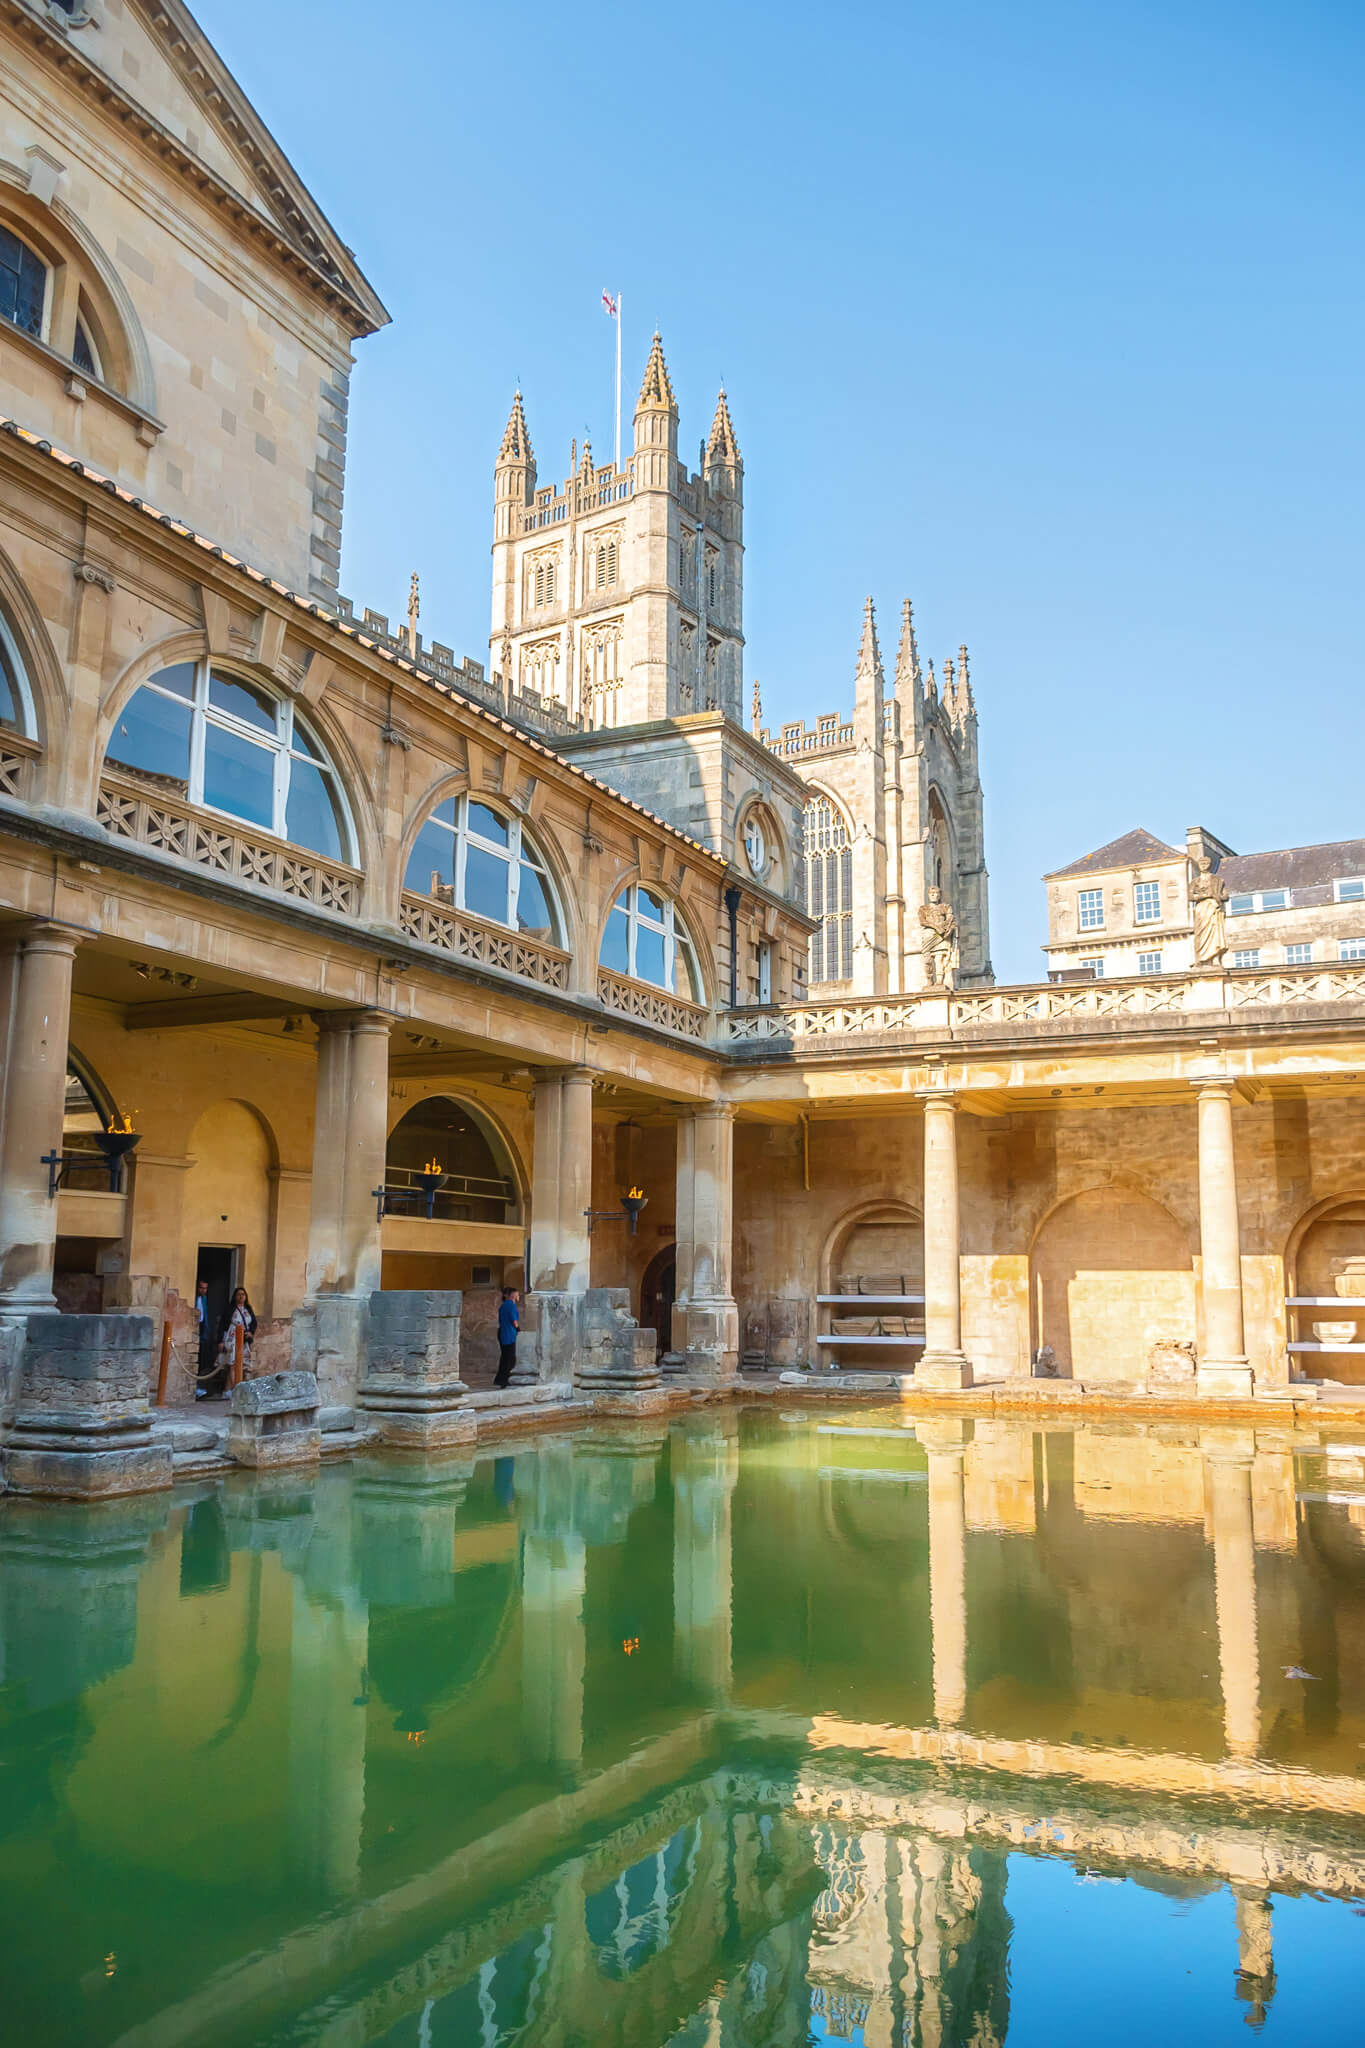 Bath Abby and the Roman Baths in Bath UK